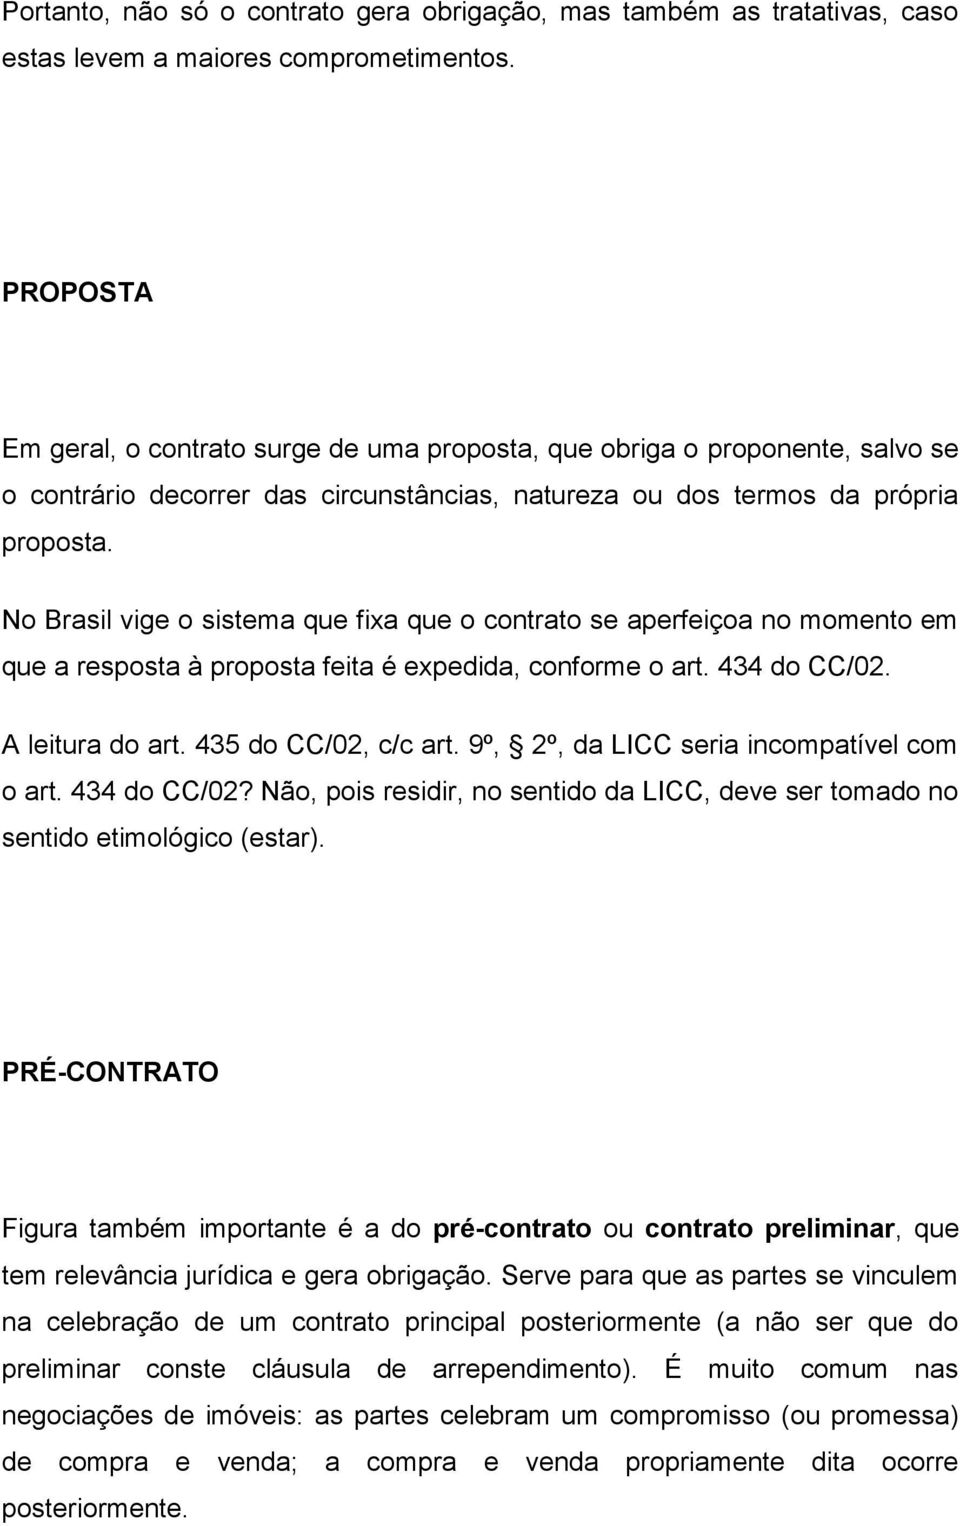 No Brasil vige o sistema que fixa que o contrato se aperfeiçoa no momento em que a resposta à proposta feita é expedida, conforme o art. 434 do CC/02. A leitura do art. 435 do CC/02, c/c art.